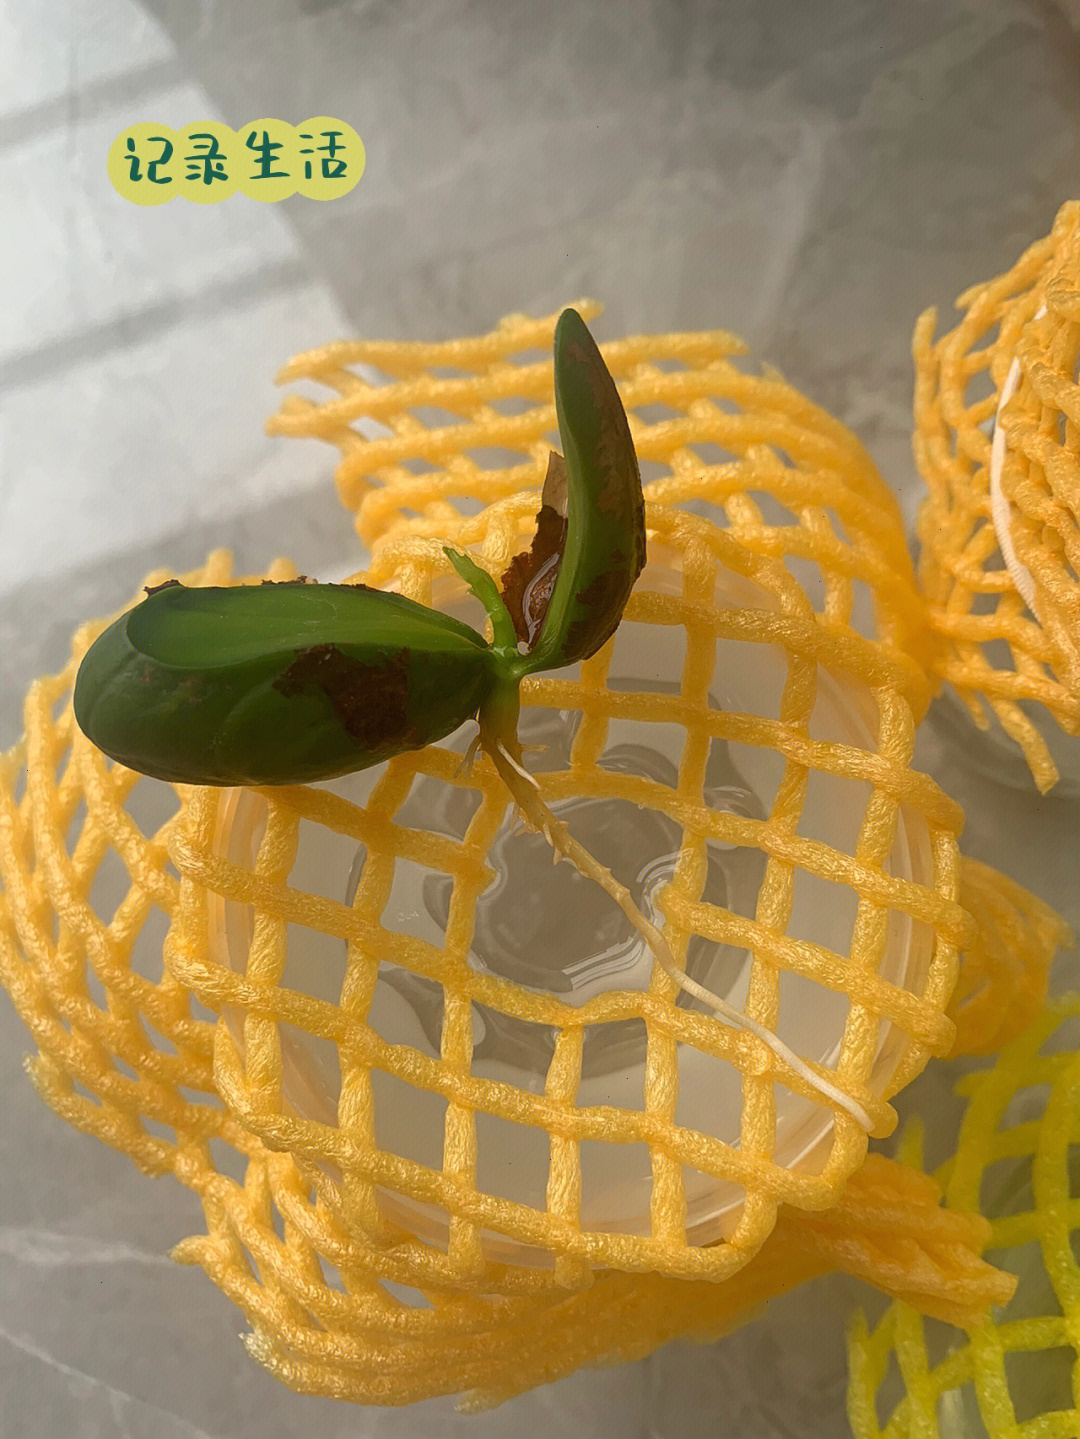 菠萝蜜的核发芽图片